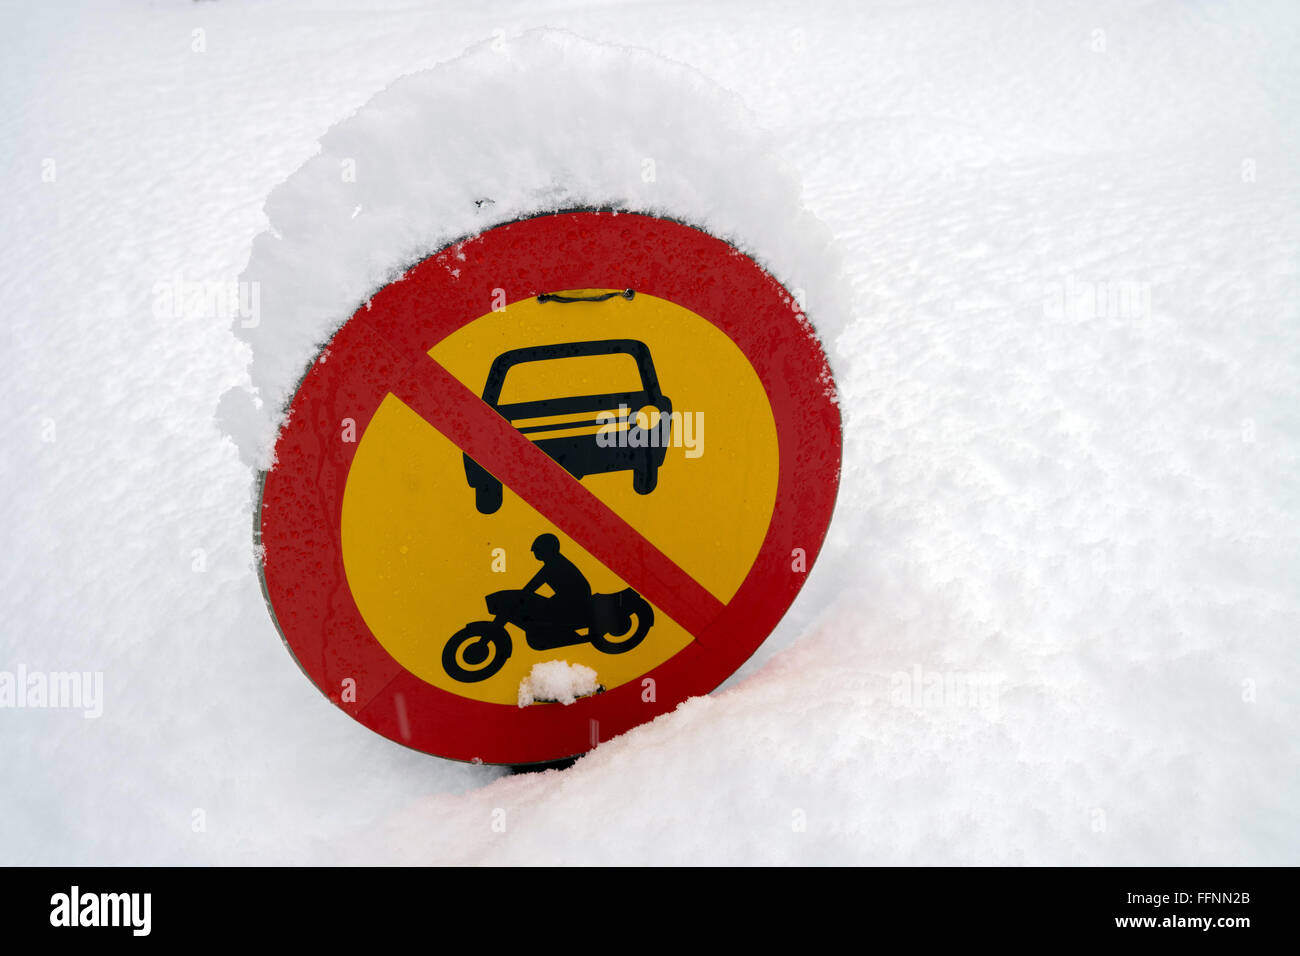 Inari, Finnland. 11. Februar 2016. Eine verbotene melden für Autos ein Motorräder in einem verschneiten Wald in der Nähe von Inari, Finnland, 11. Februar 2016. Foto: Peter Endig - NO-Draht-SERVICE-/ Dpa/Alamy Live News Stockfoto